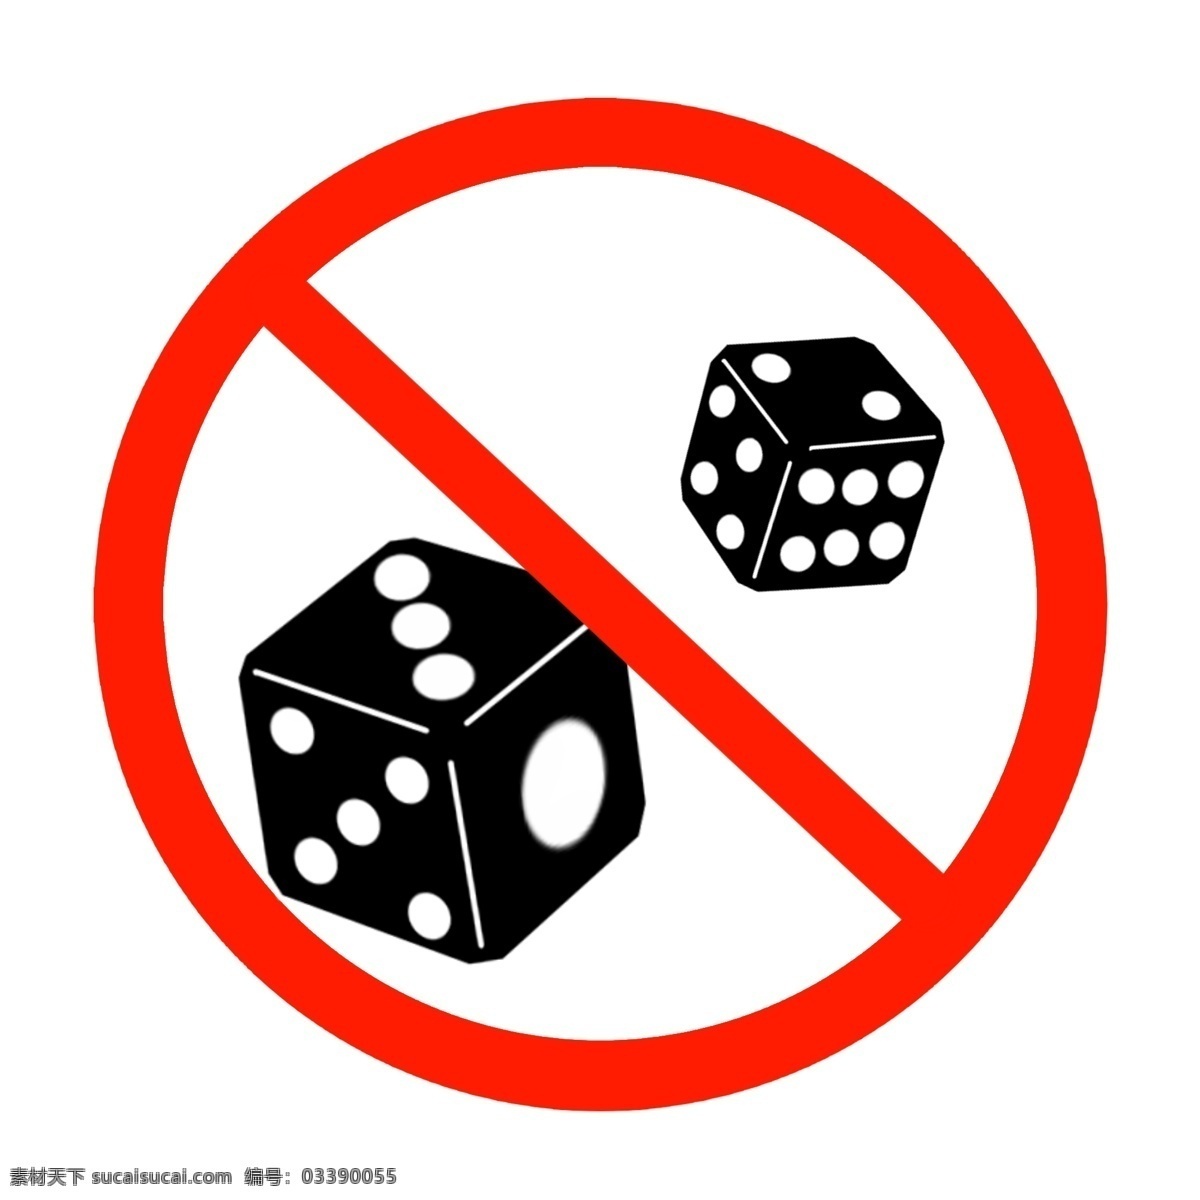 禁止 赌博 的卡 通 插画 黑色的骰子 圆形警示牌 警示牌 黑色图示 禁止赌博插画 黑色警示牌 红色警示